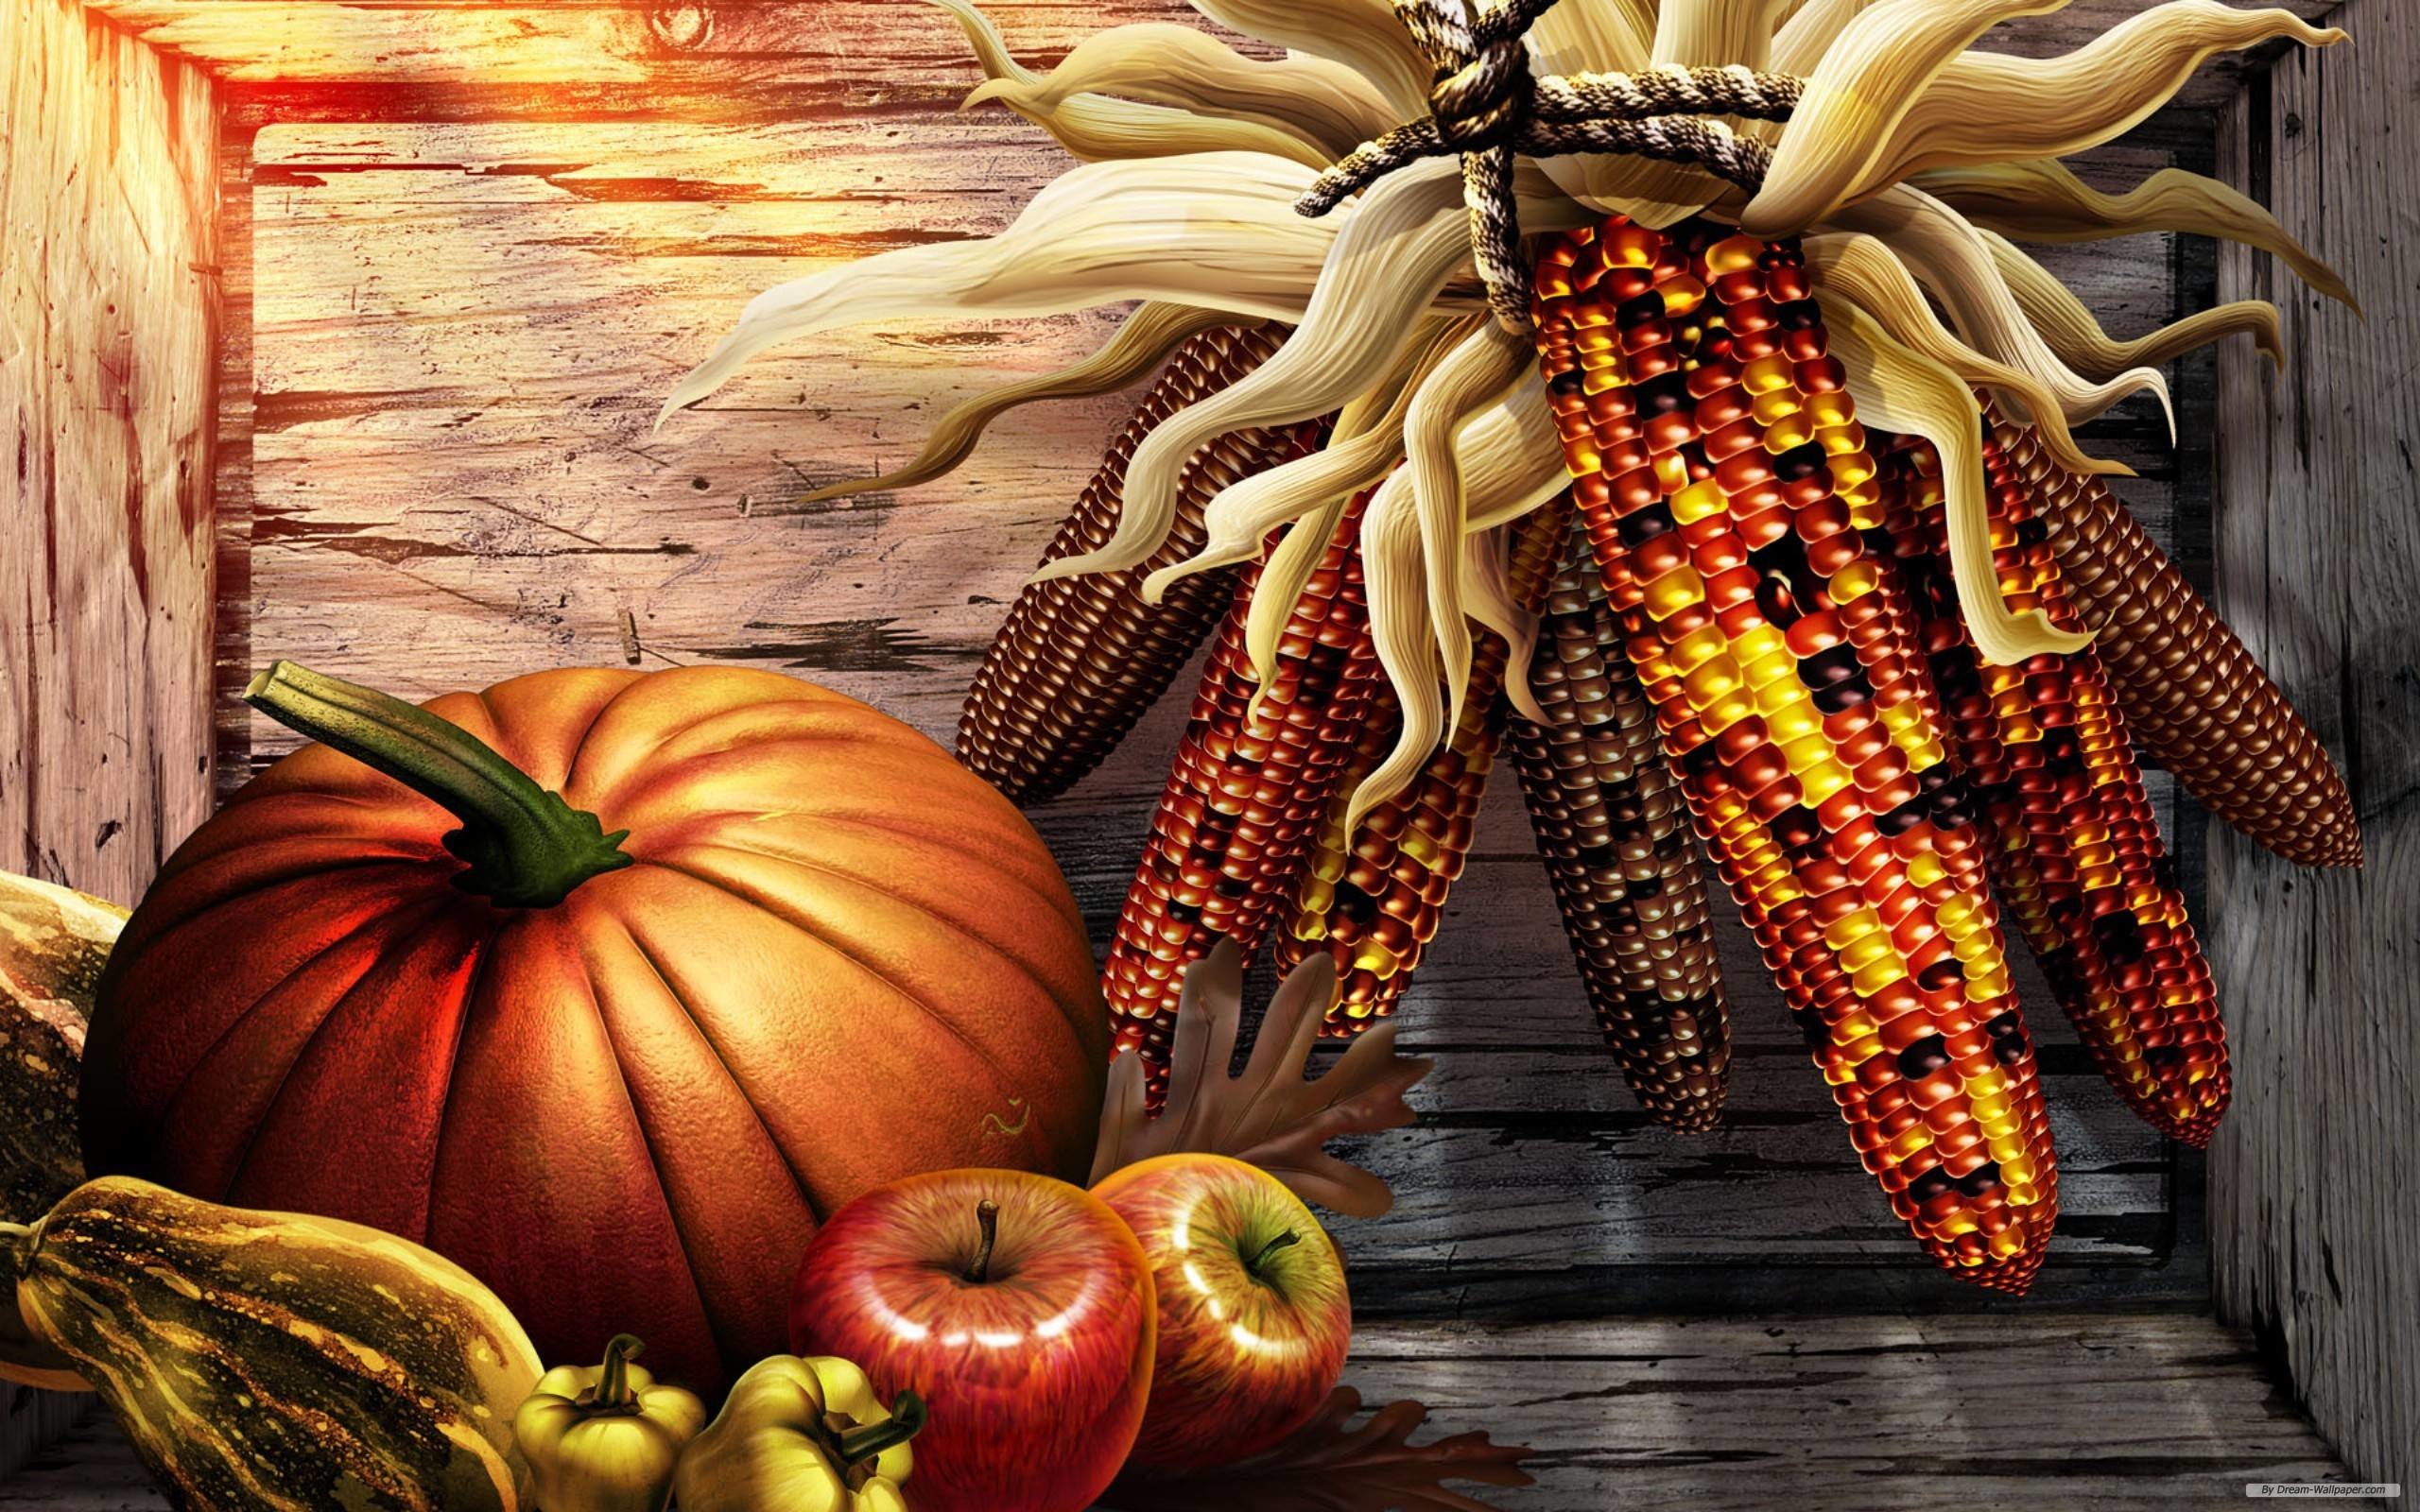 Religious Thanksgiving Background